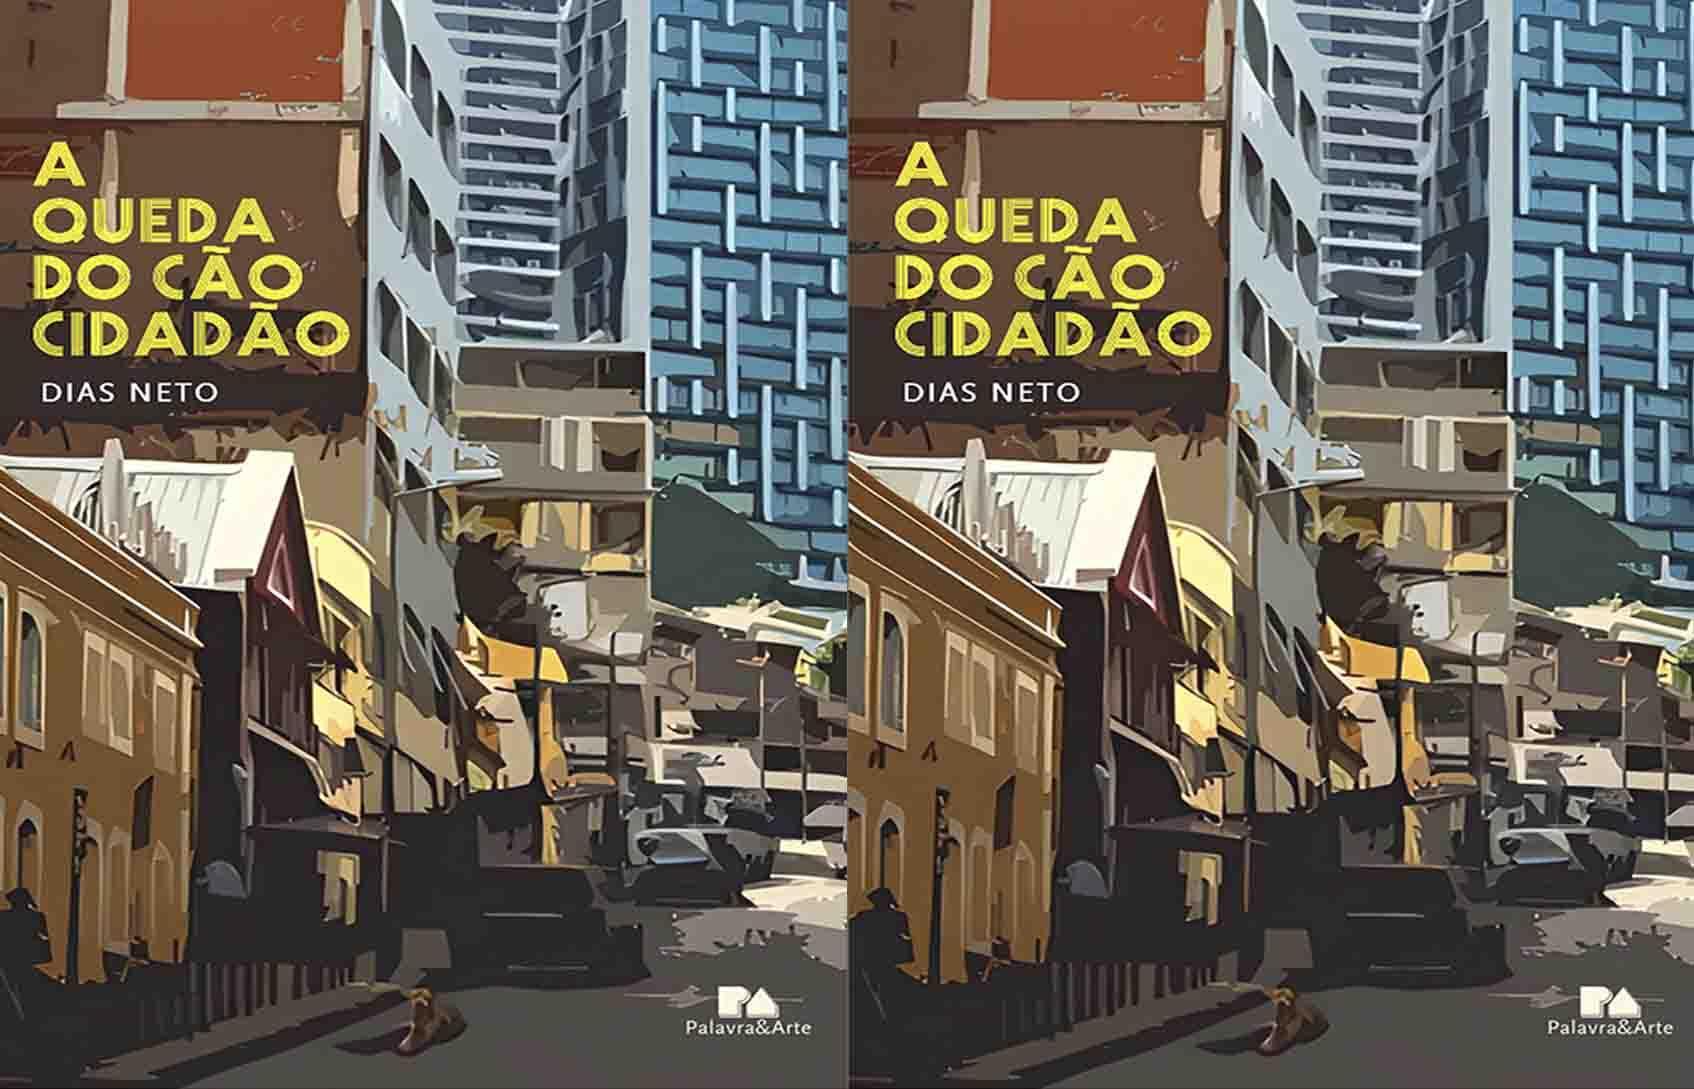 Writer Dias Neto prepares the launch of the work “A Queda do Cão Cidadão”